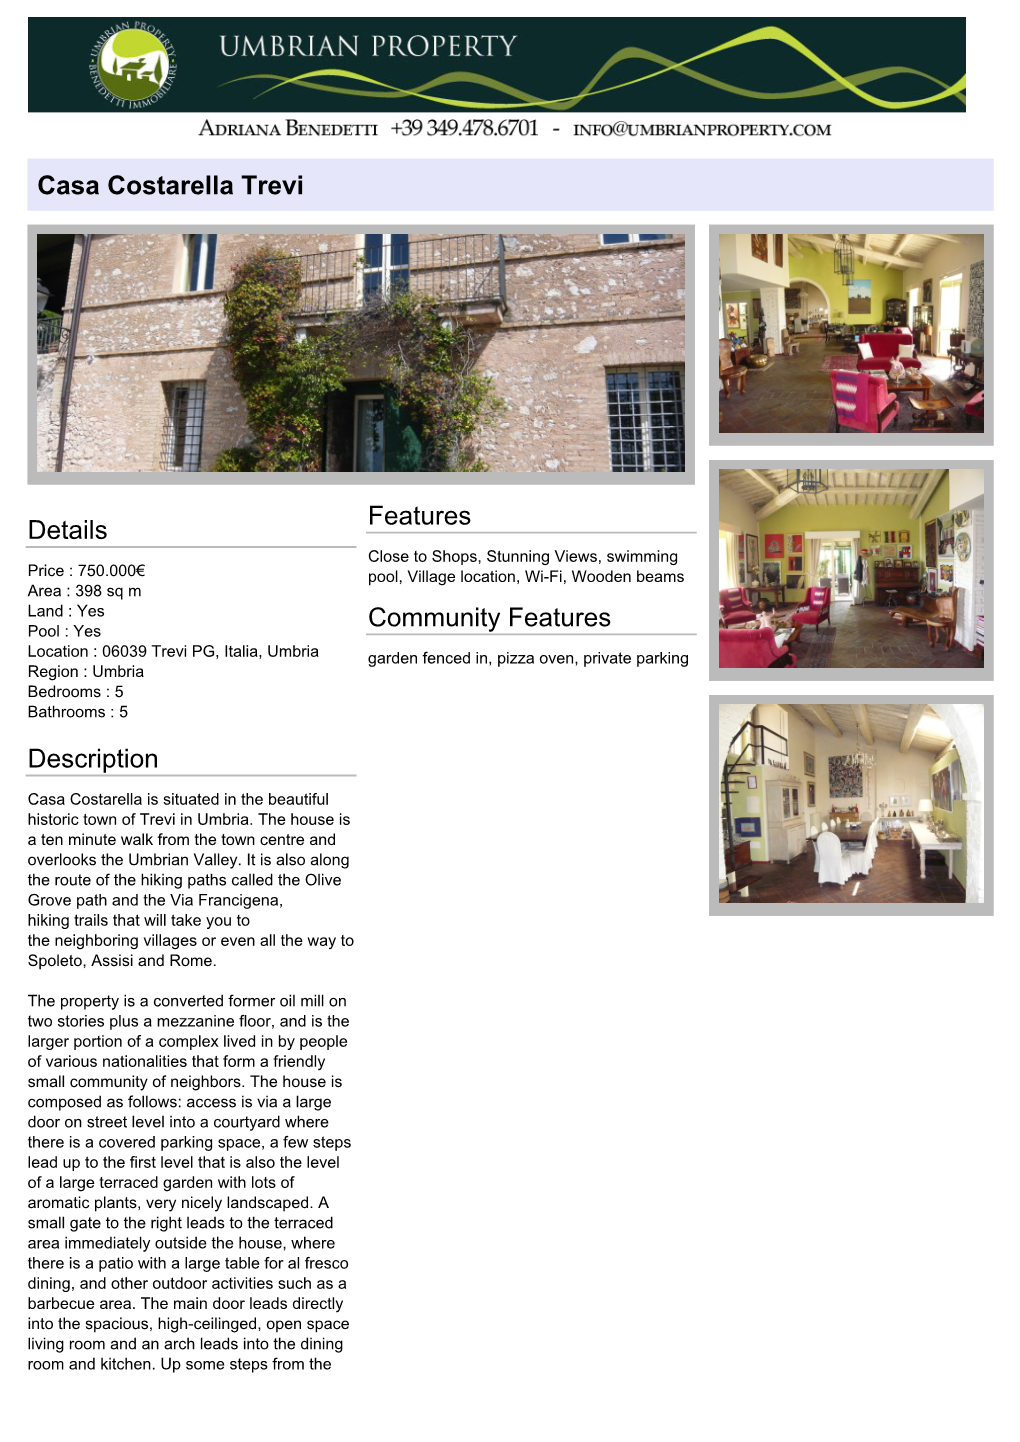 Casa Costarella Trevi Details Description